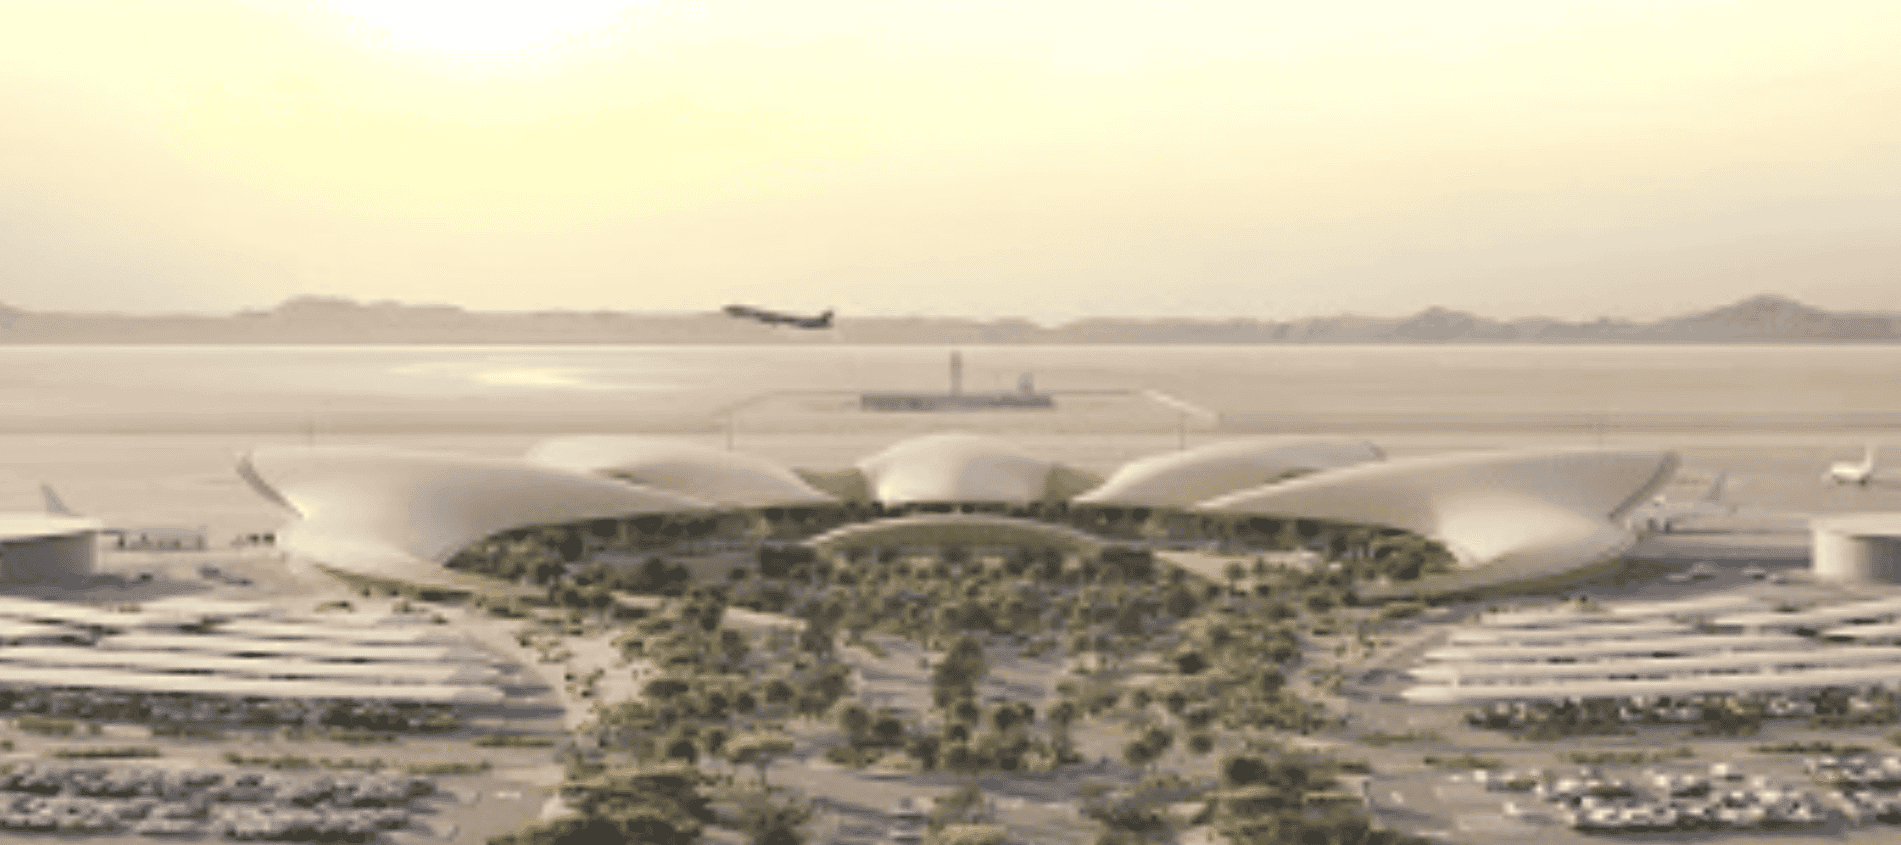 Red Sea airport Saudi